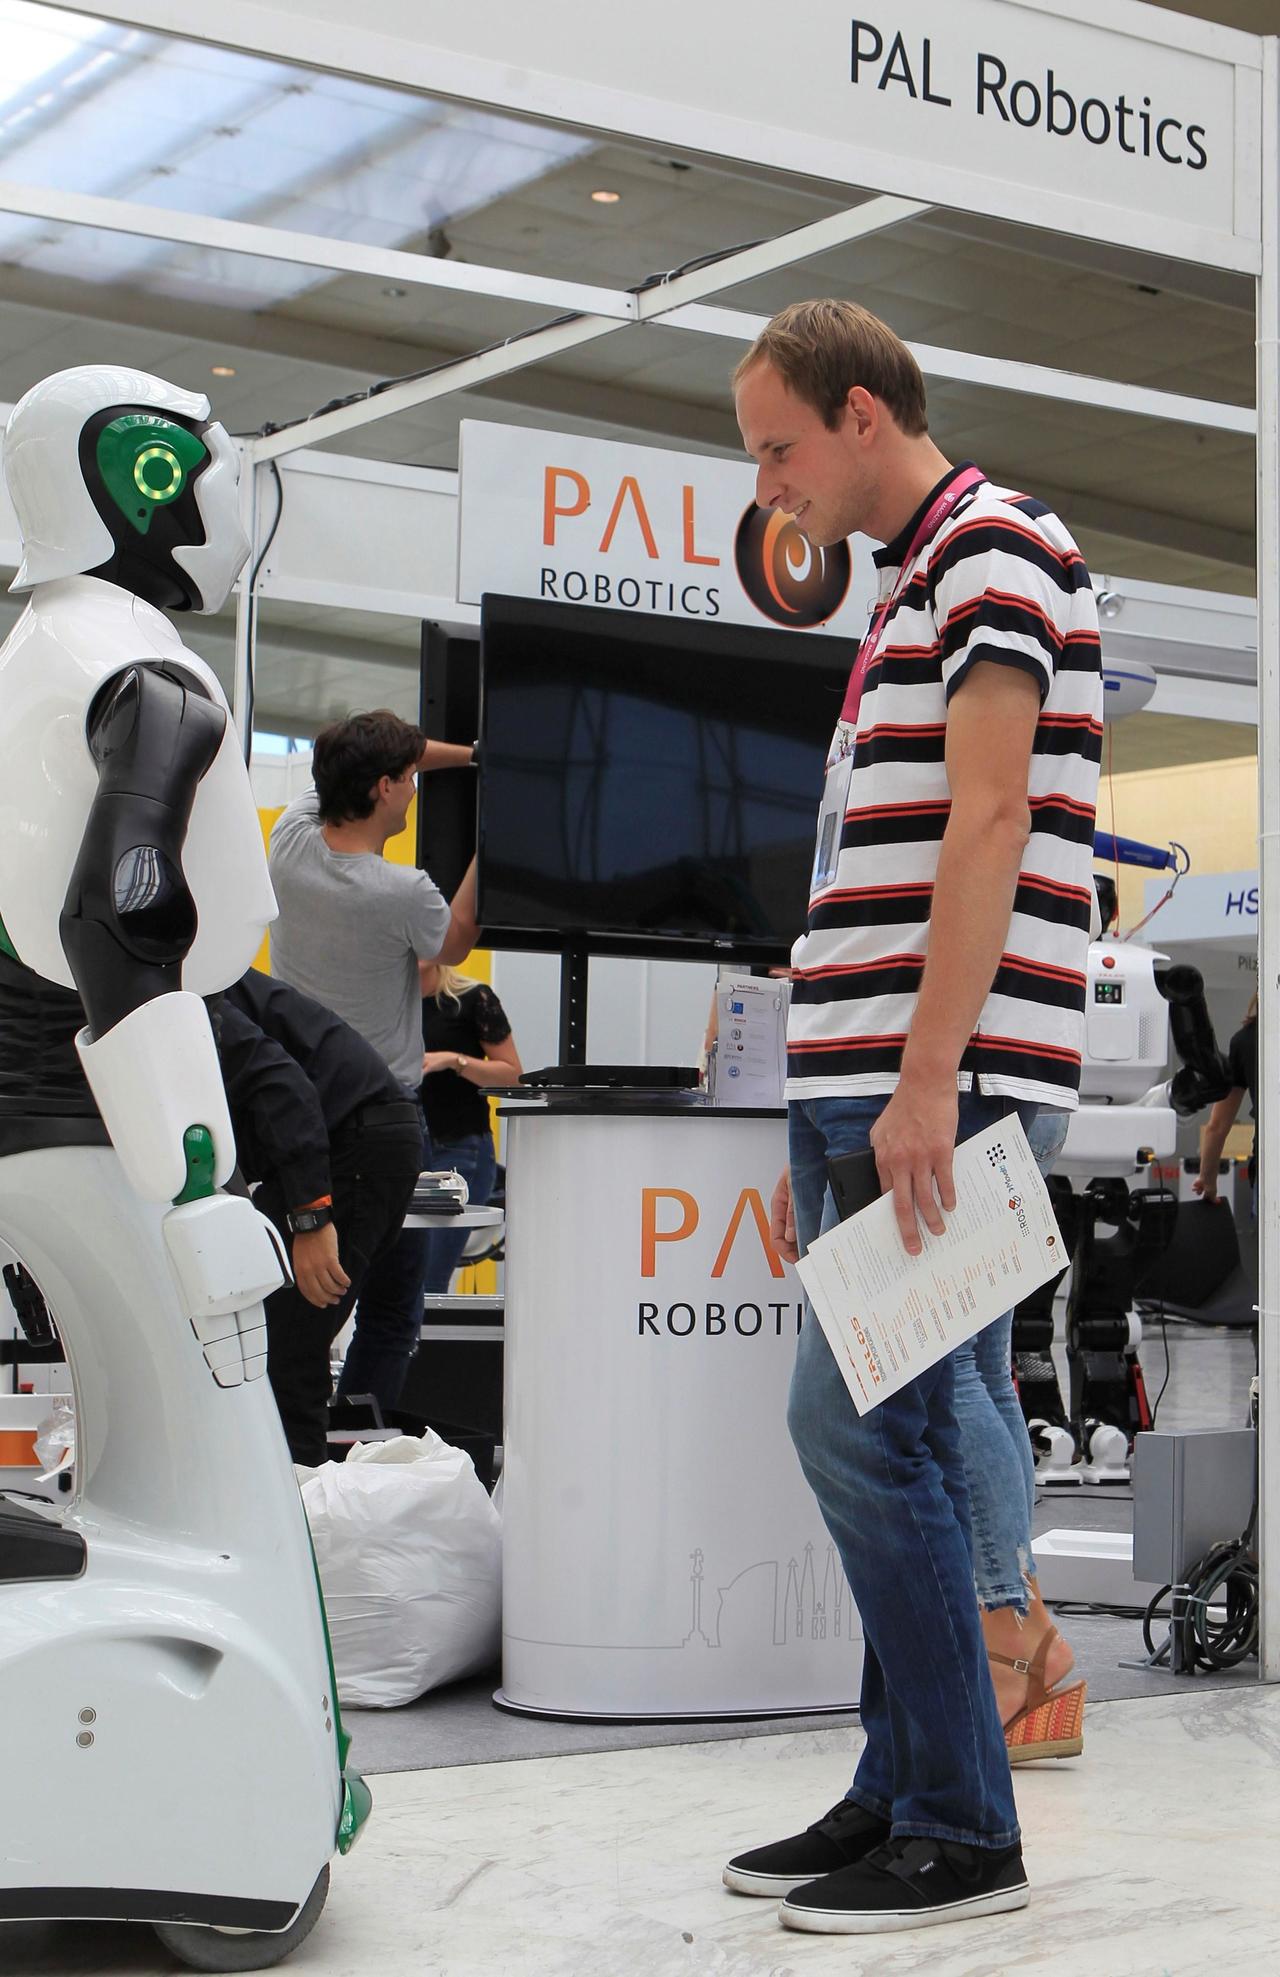 Amigables.Los Robots sociables se han vuelto populares en todo el mundo, existen versiones muy amigables como el robot mesero. (ARCHIVO)